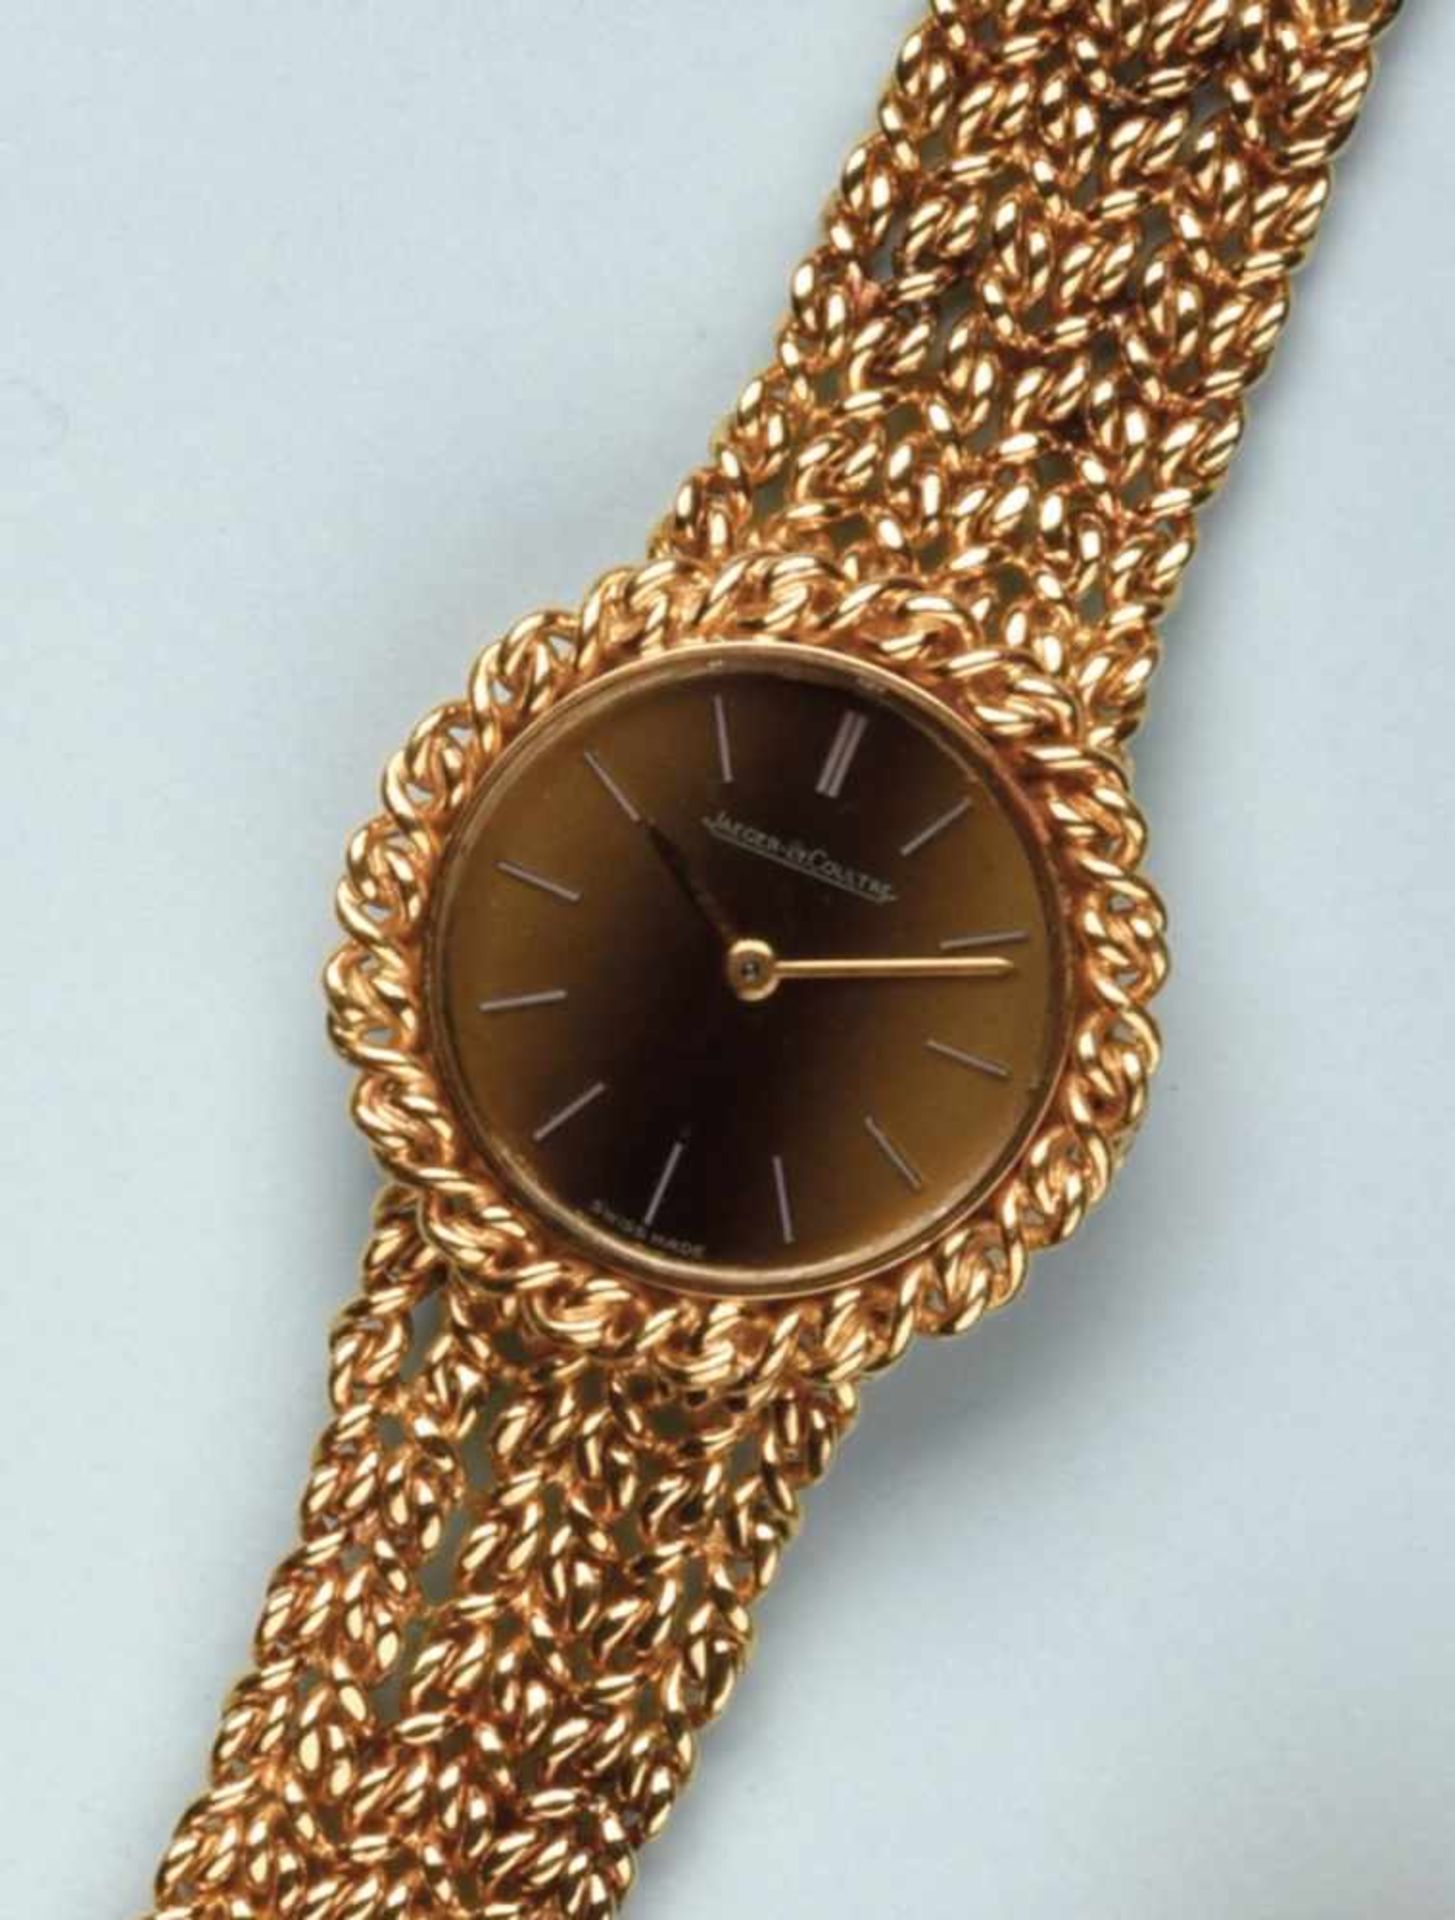 Bracelet montre pour dame en or jaune 750 de marque "JAEGER-LECOULTRE". La montre de forme ronde,